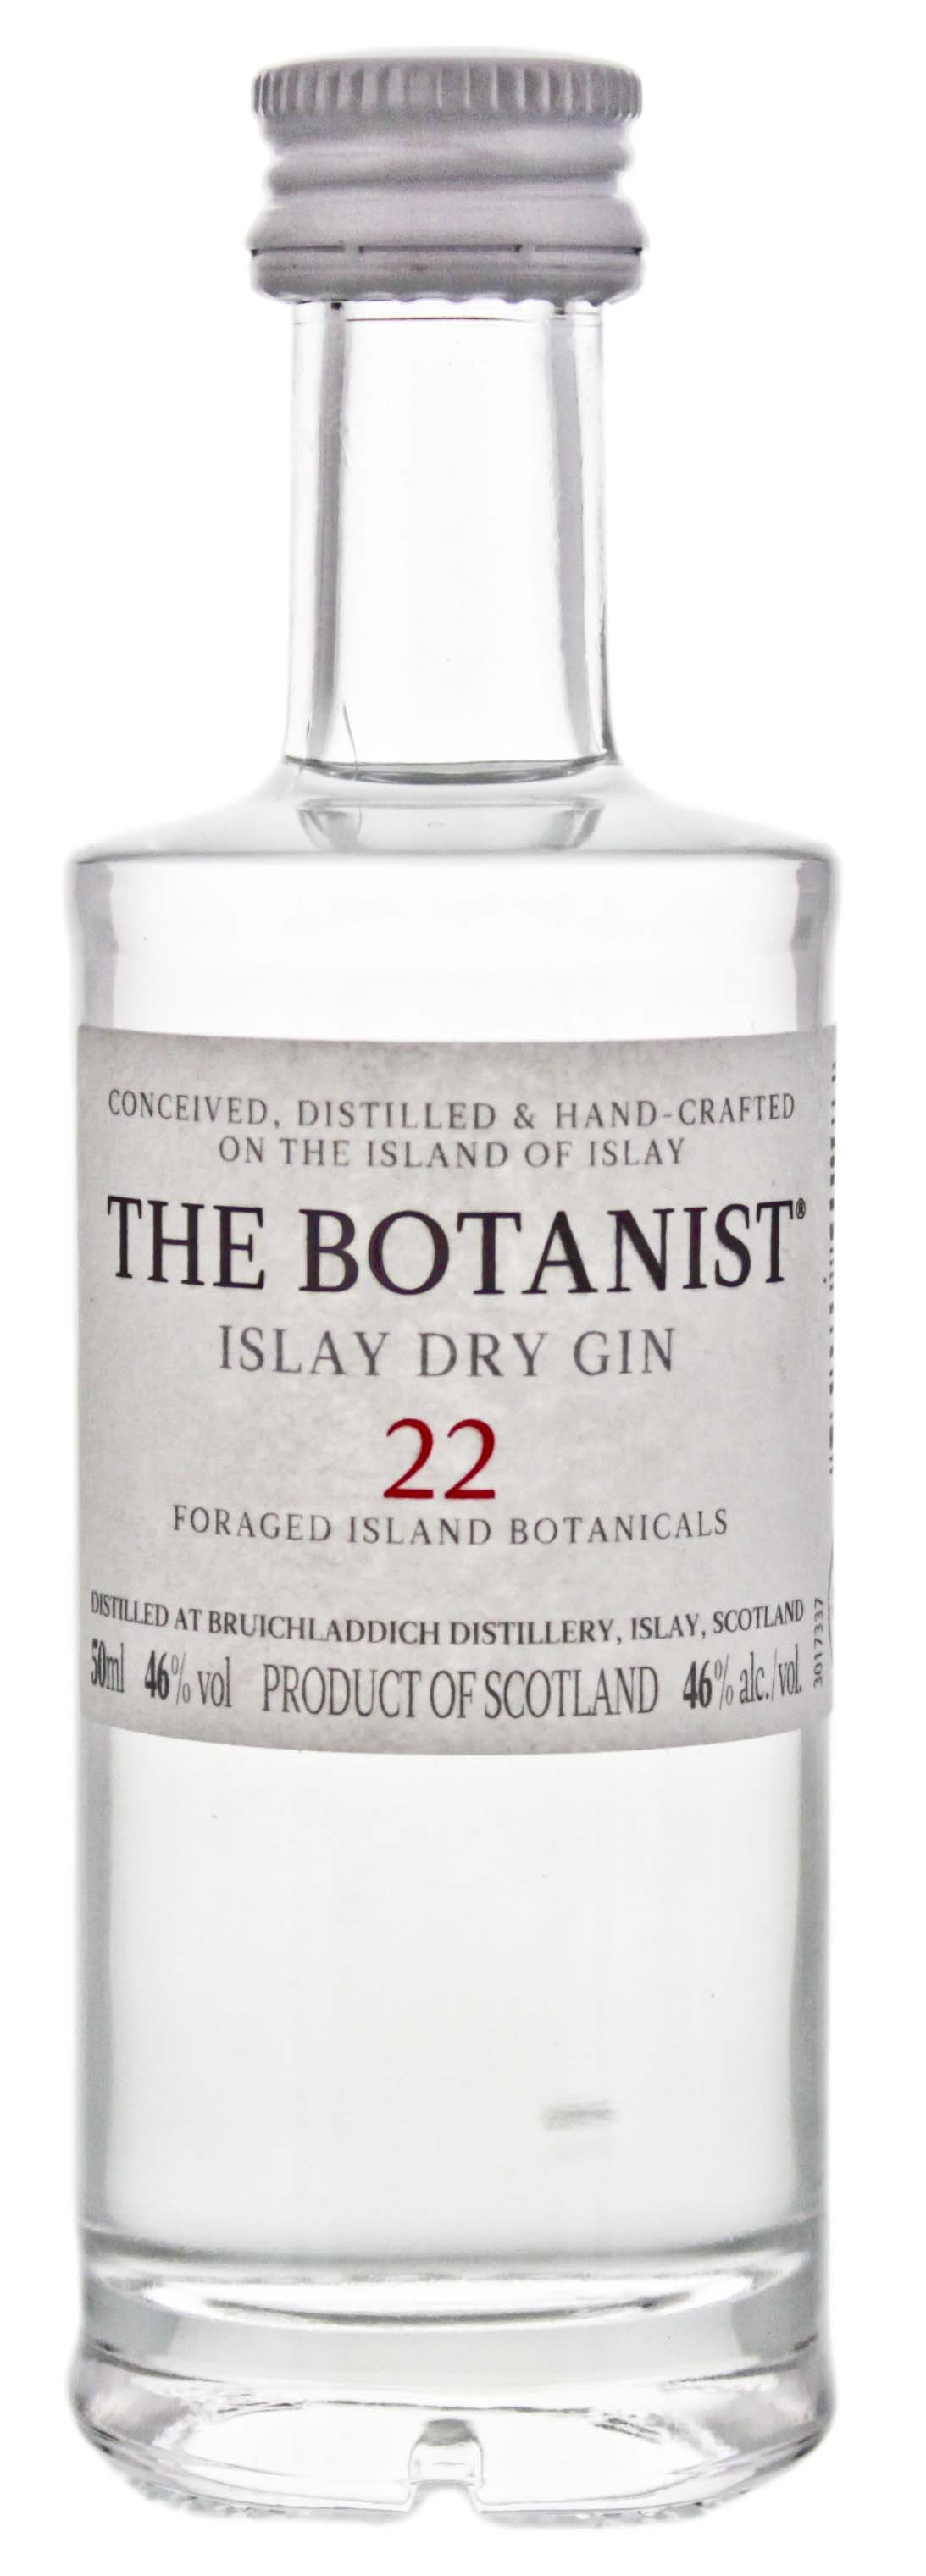 The Botanist Islay Dry Gin Miniatur jetzt kaufen im Drinkology Online Shop !